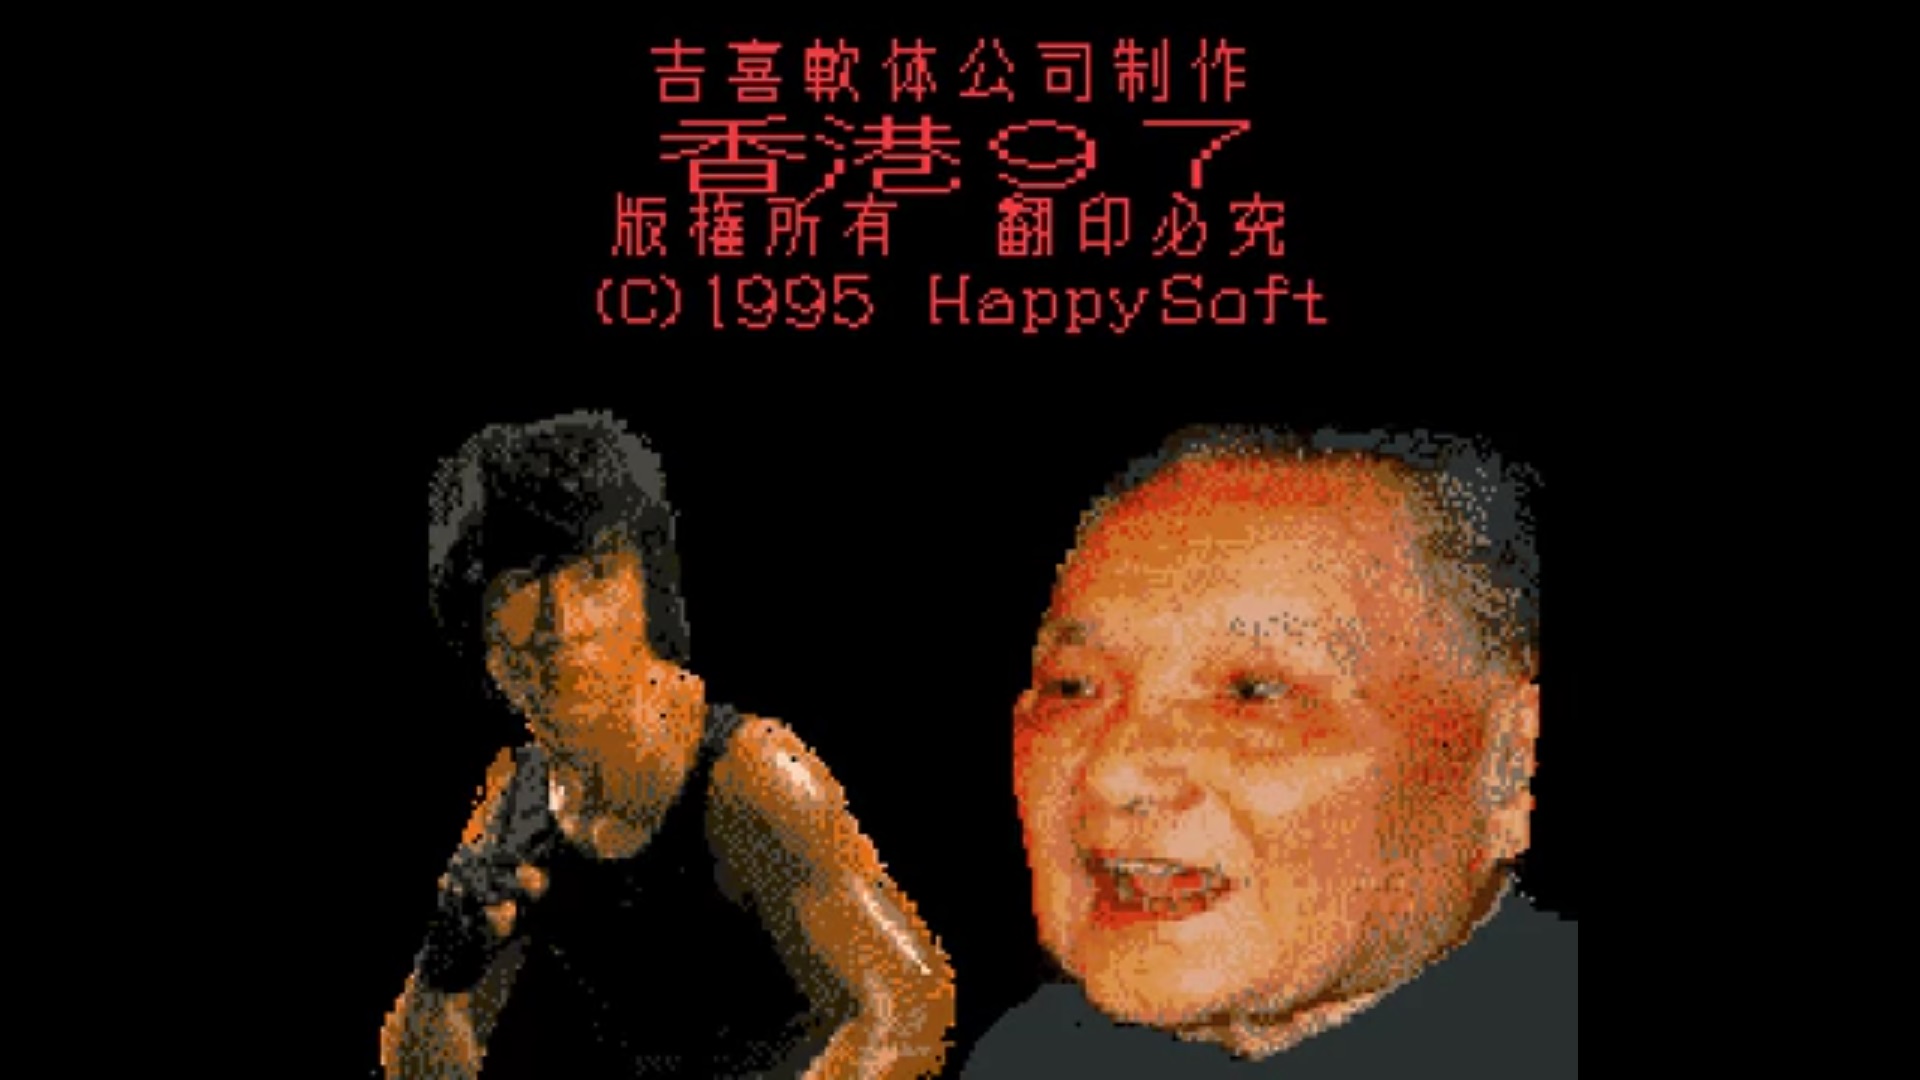 Twórca Hong Kong 97, czyli najgorszej gry świata ujawniony